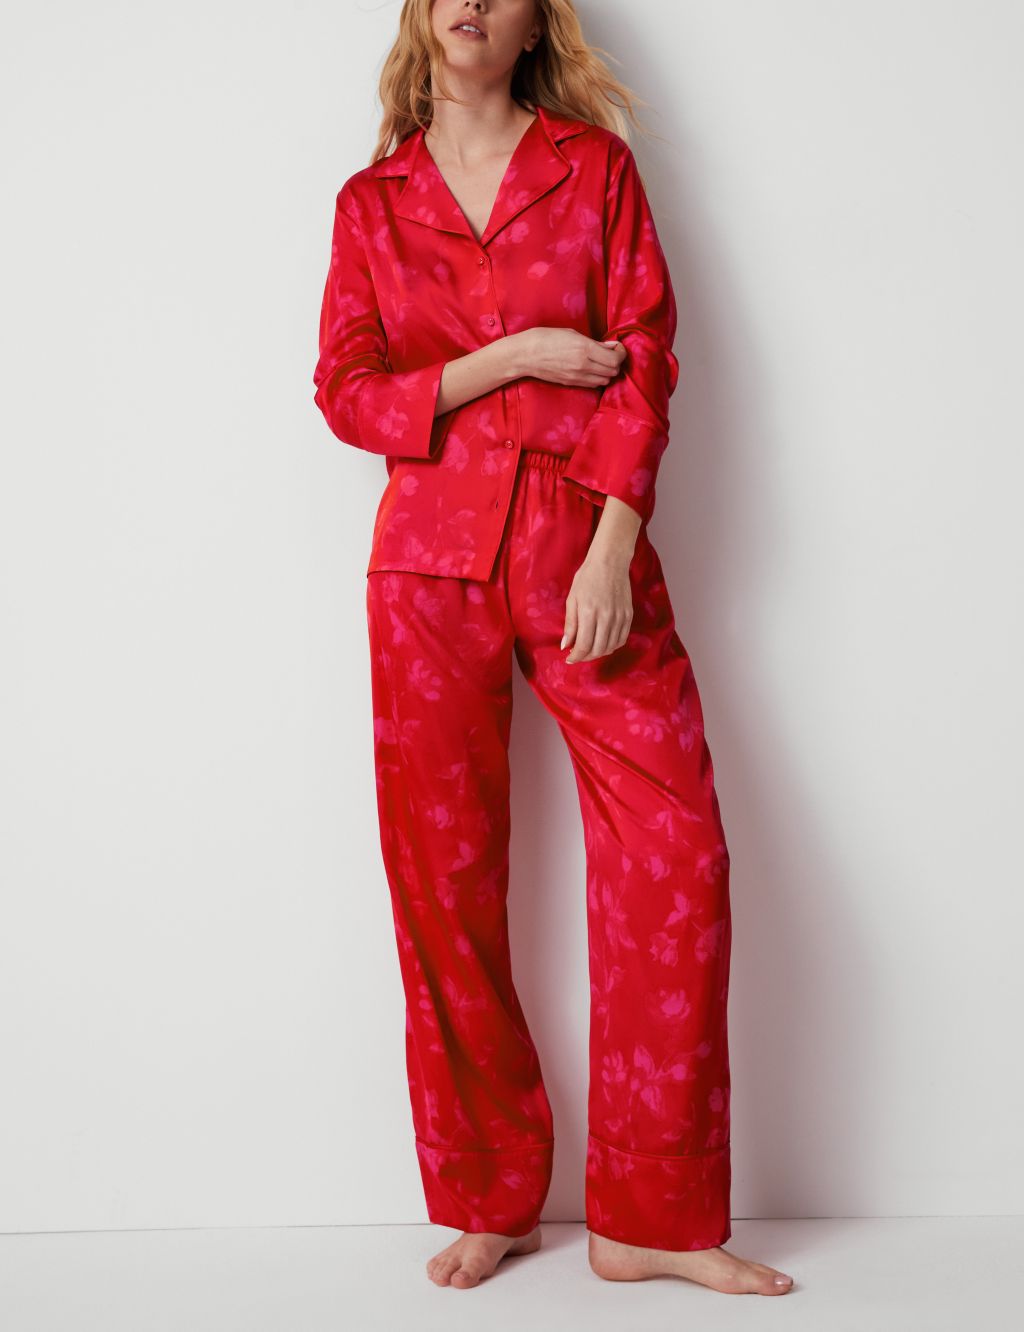 Ladies Womens Pyjamas Set Long Sleeve Top Nightwear Pajamas Z9T4 